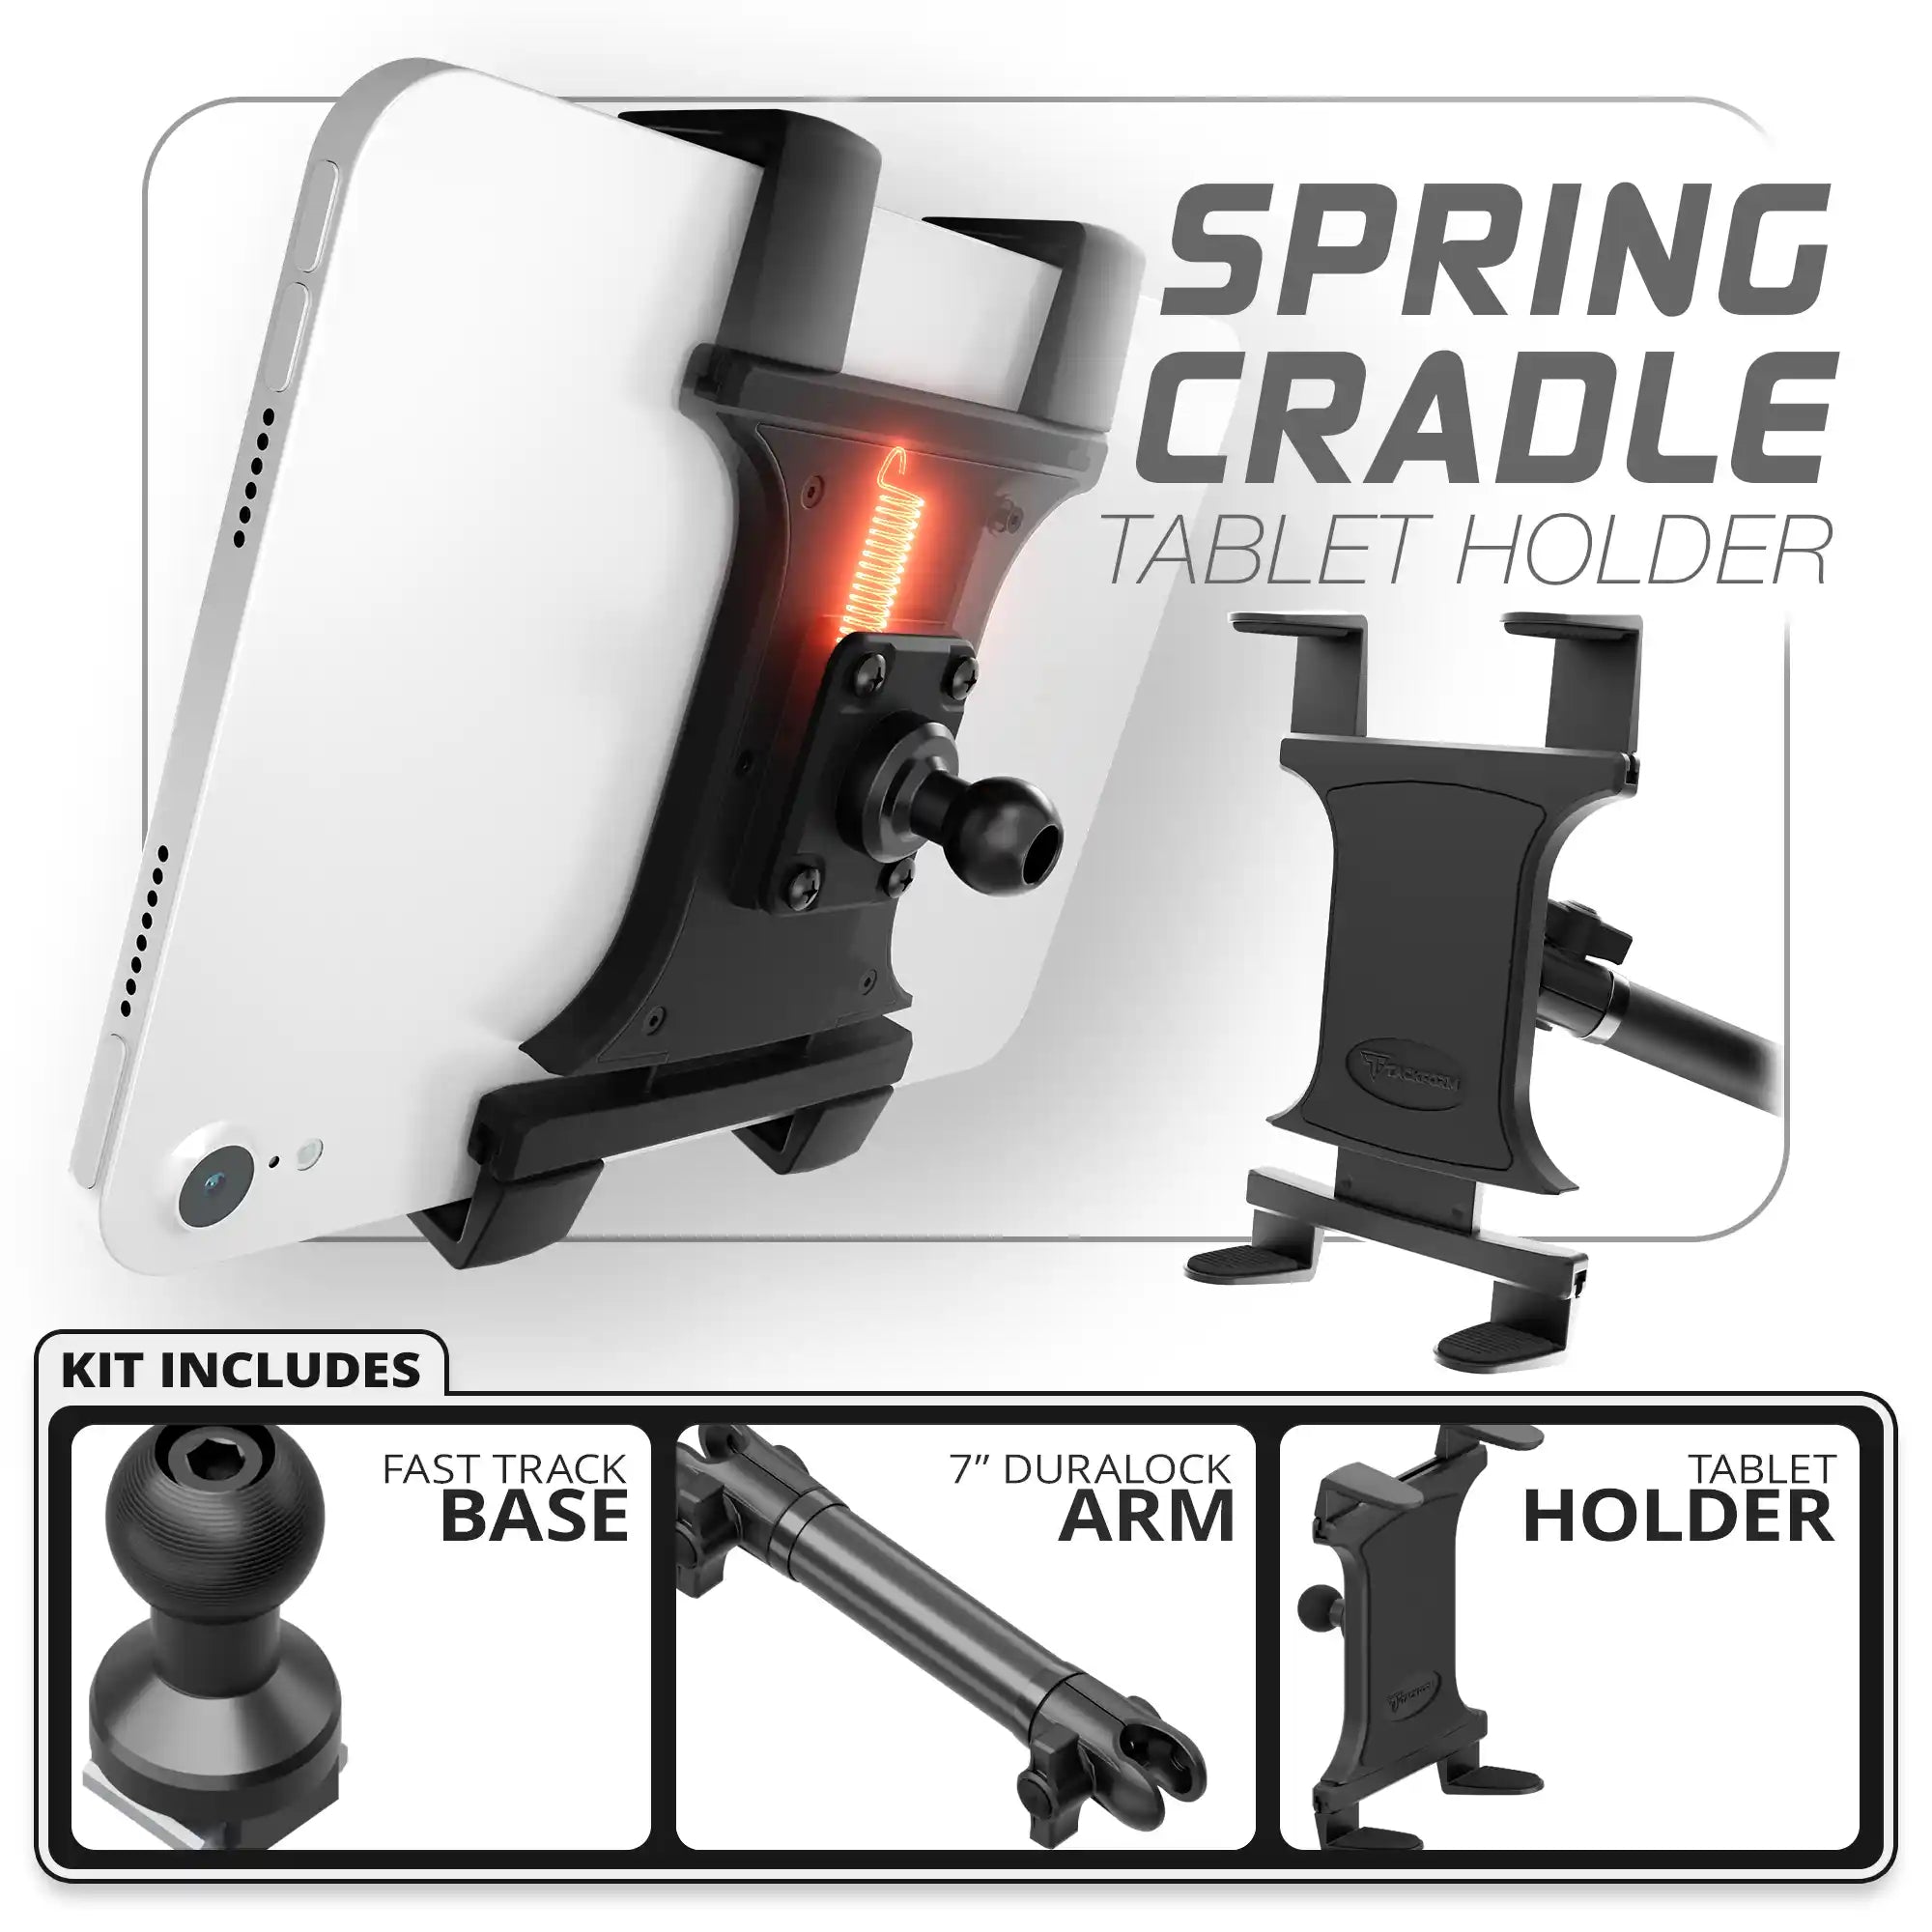 Tablet Spring Cradle | Fast Track Base | 7" DuraLock Arm